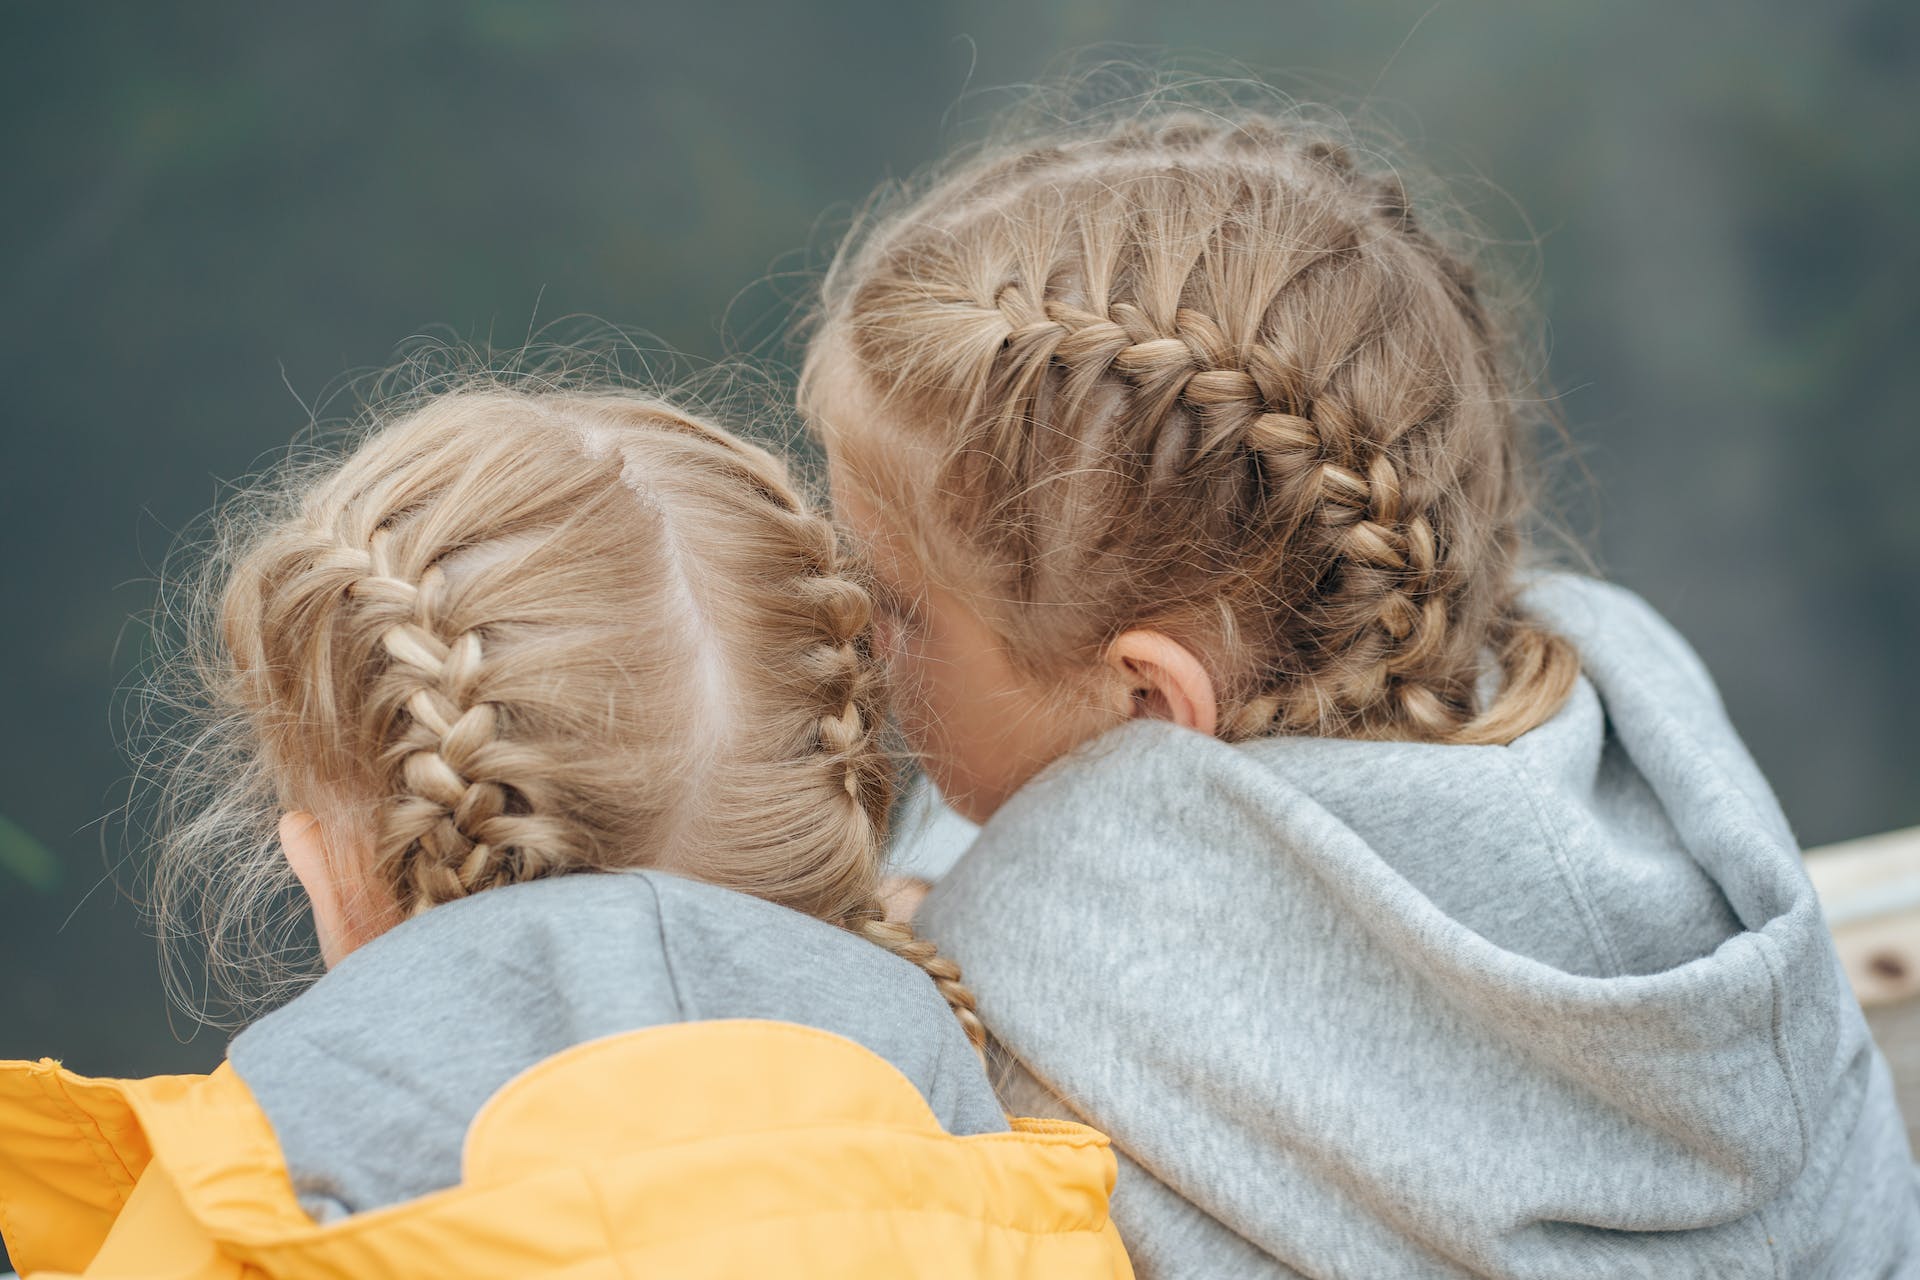 Zwei kleine Mädchen | Quelle: Pexels